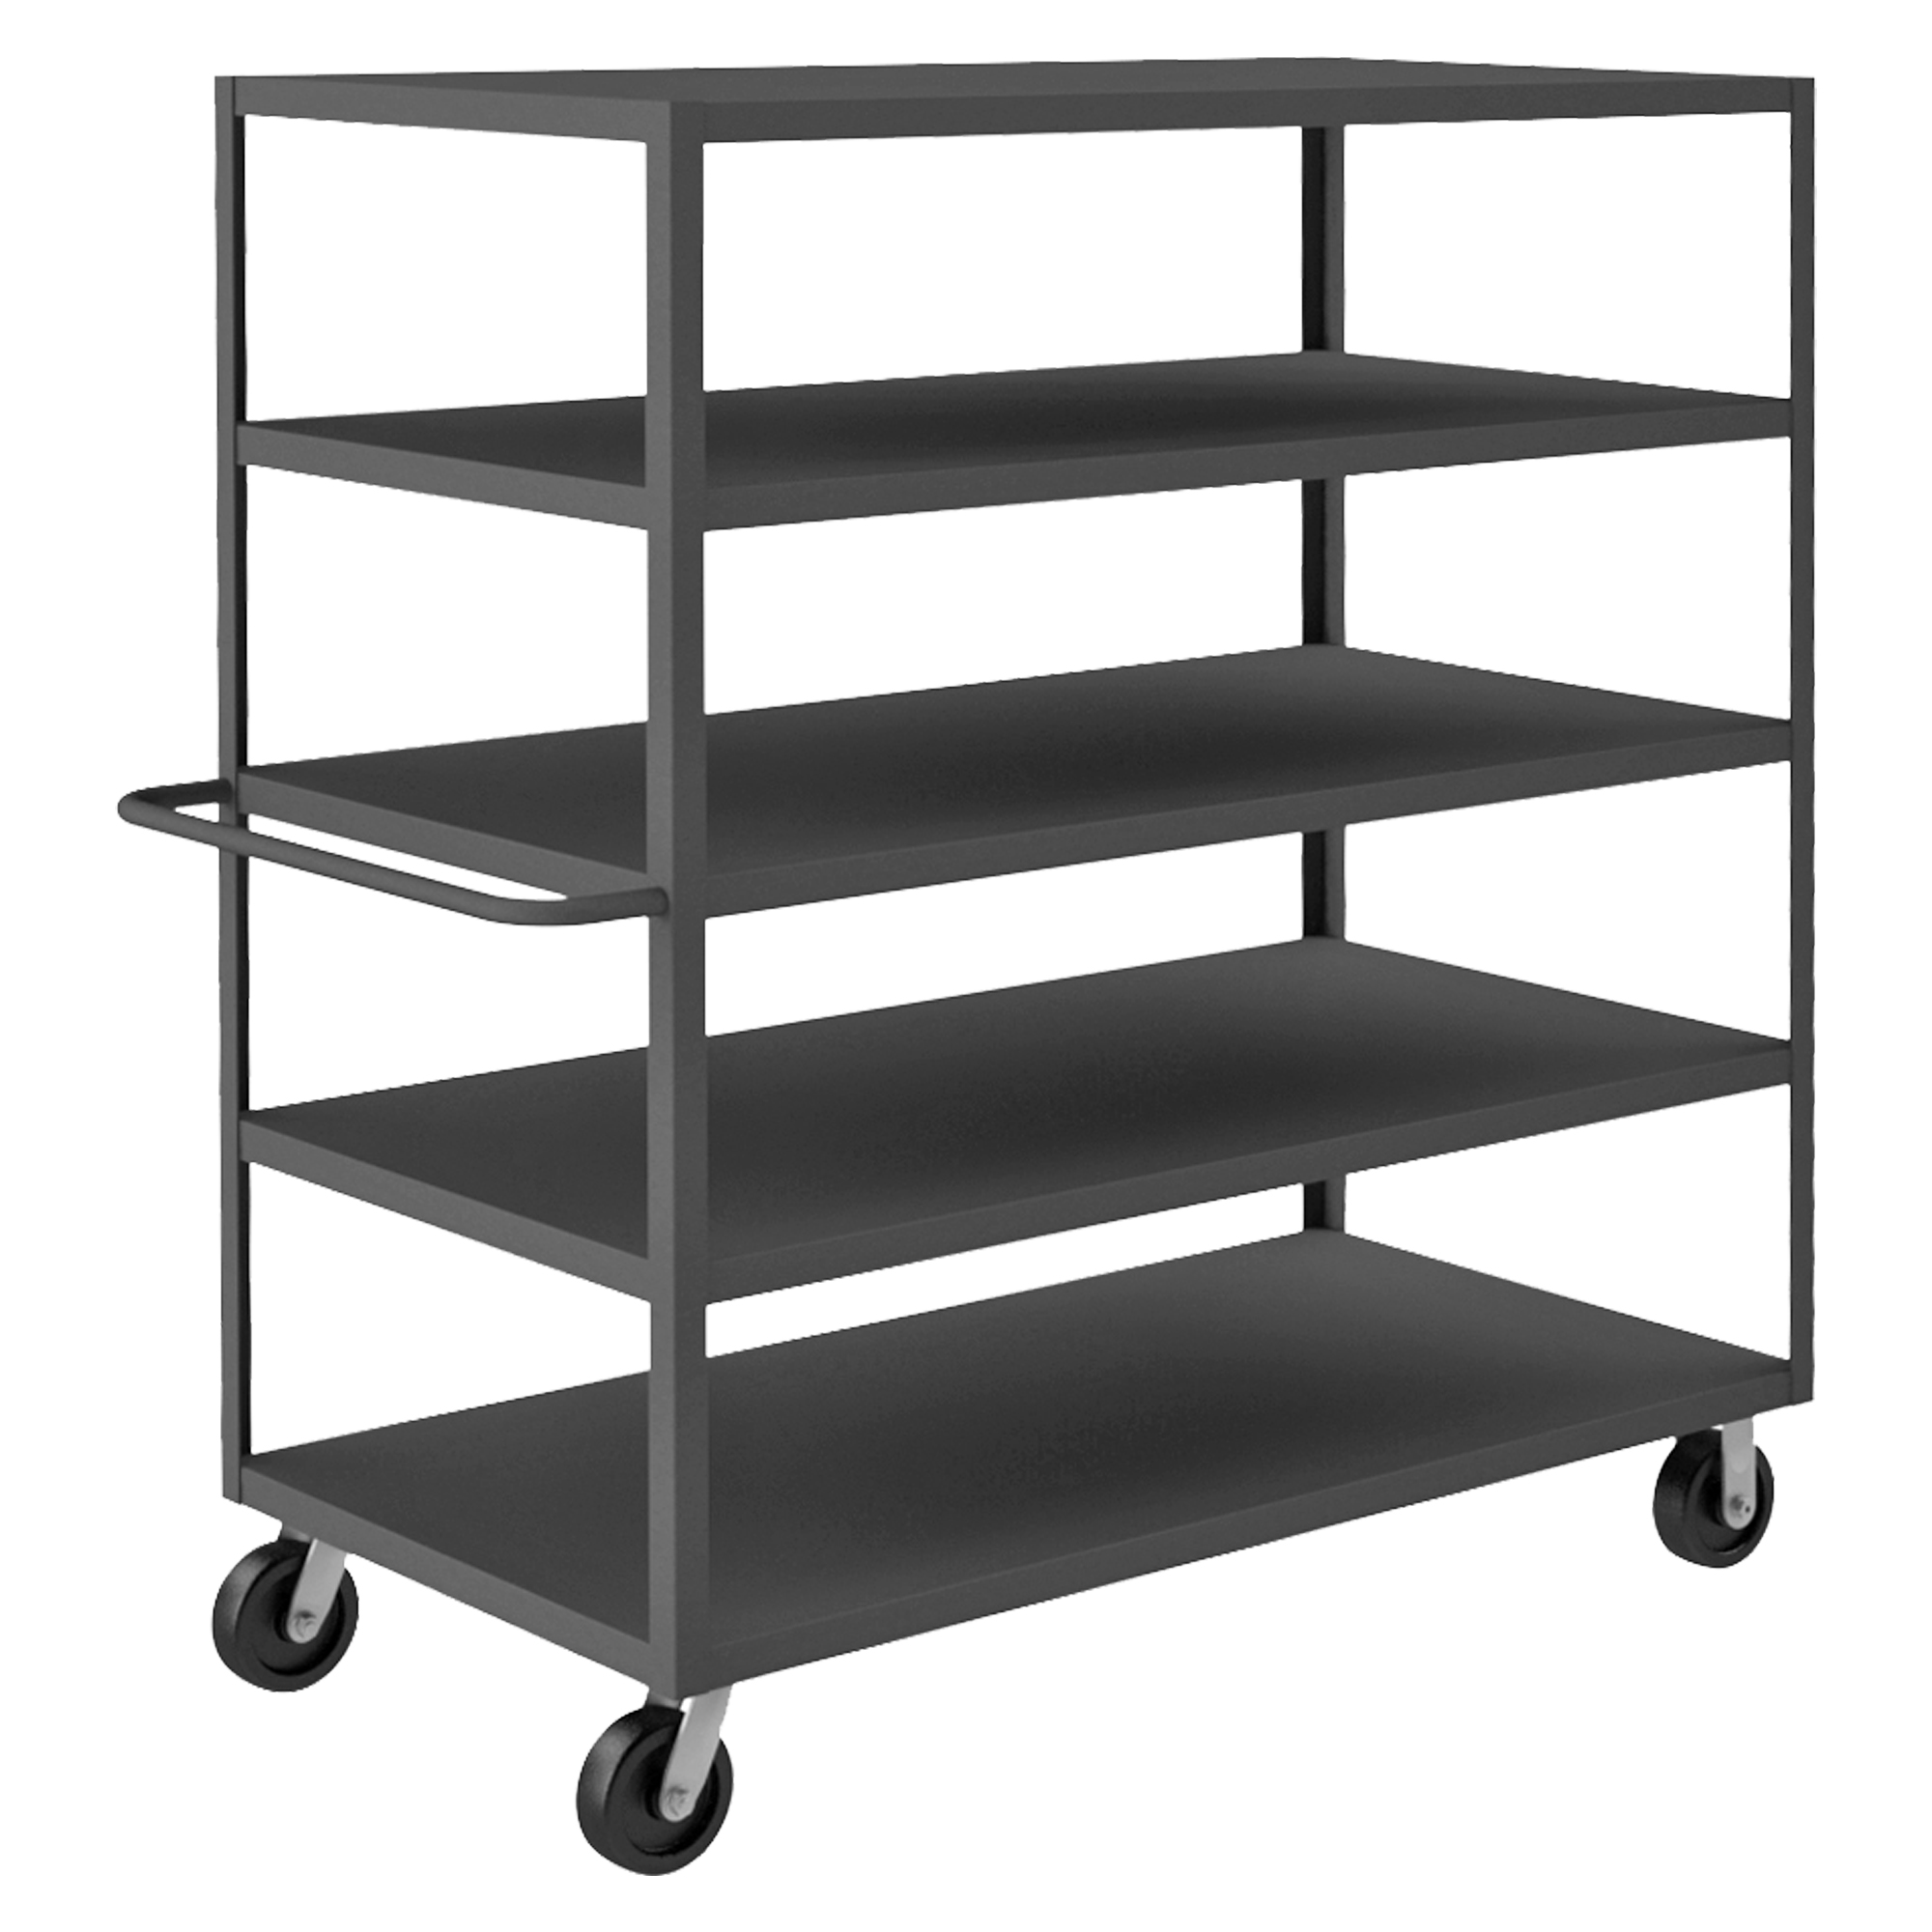 Stock Cart, 5 Shelf, Size 30-1/4 x 66-1/4 x 66-1/2 Inch